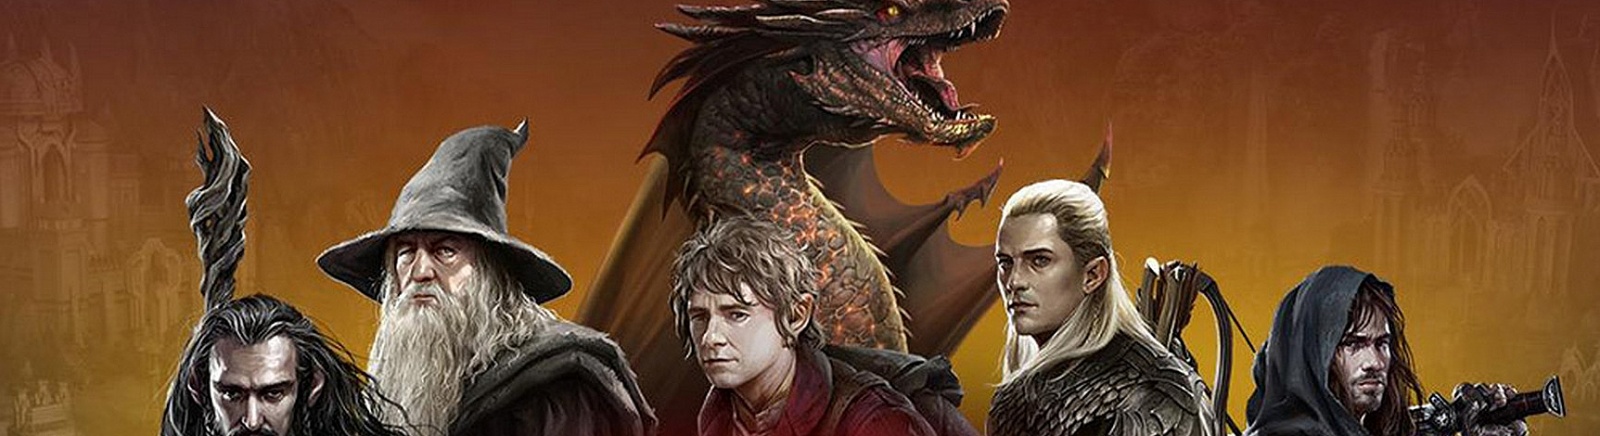 Дата выхода Hobbit: Kingdoms of Middle-Earth  на iOS и Android в России и во всем мире